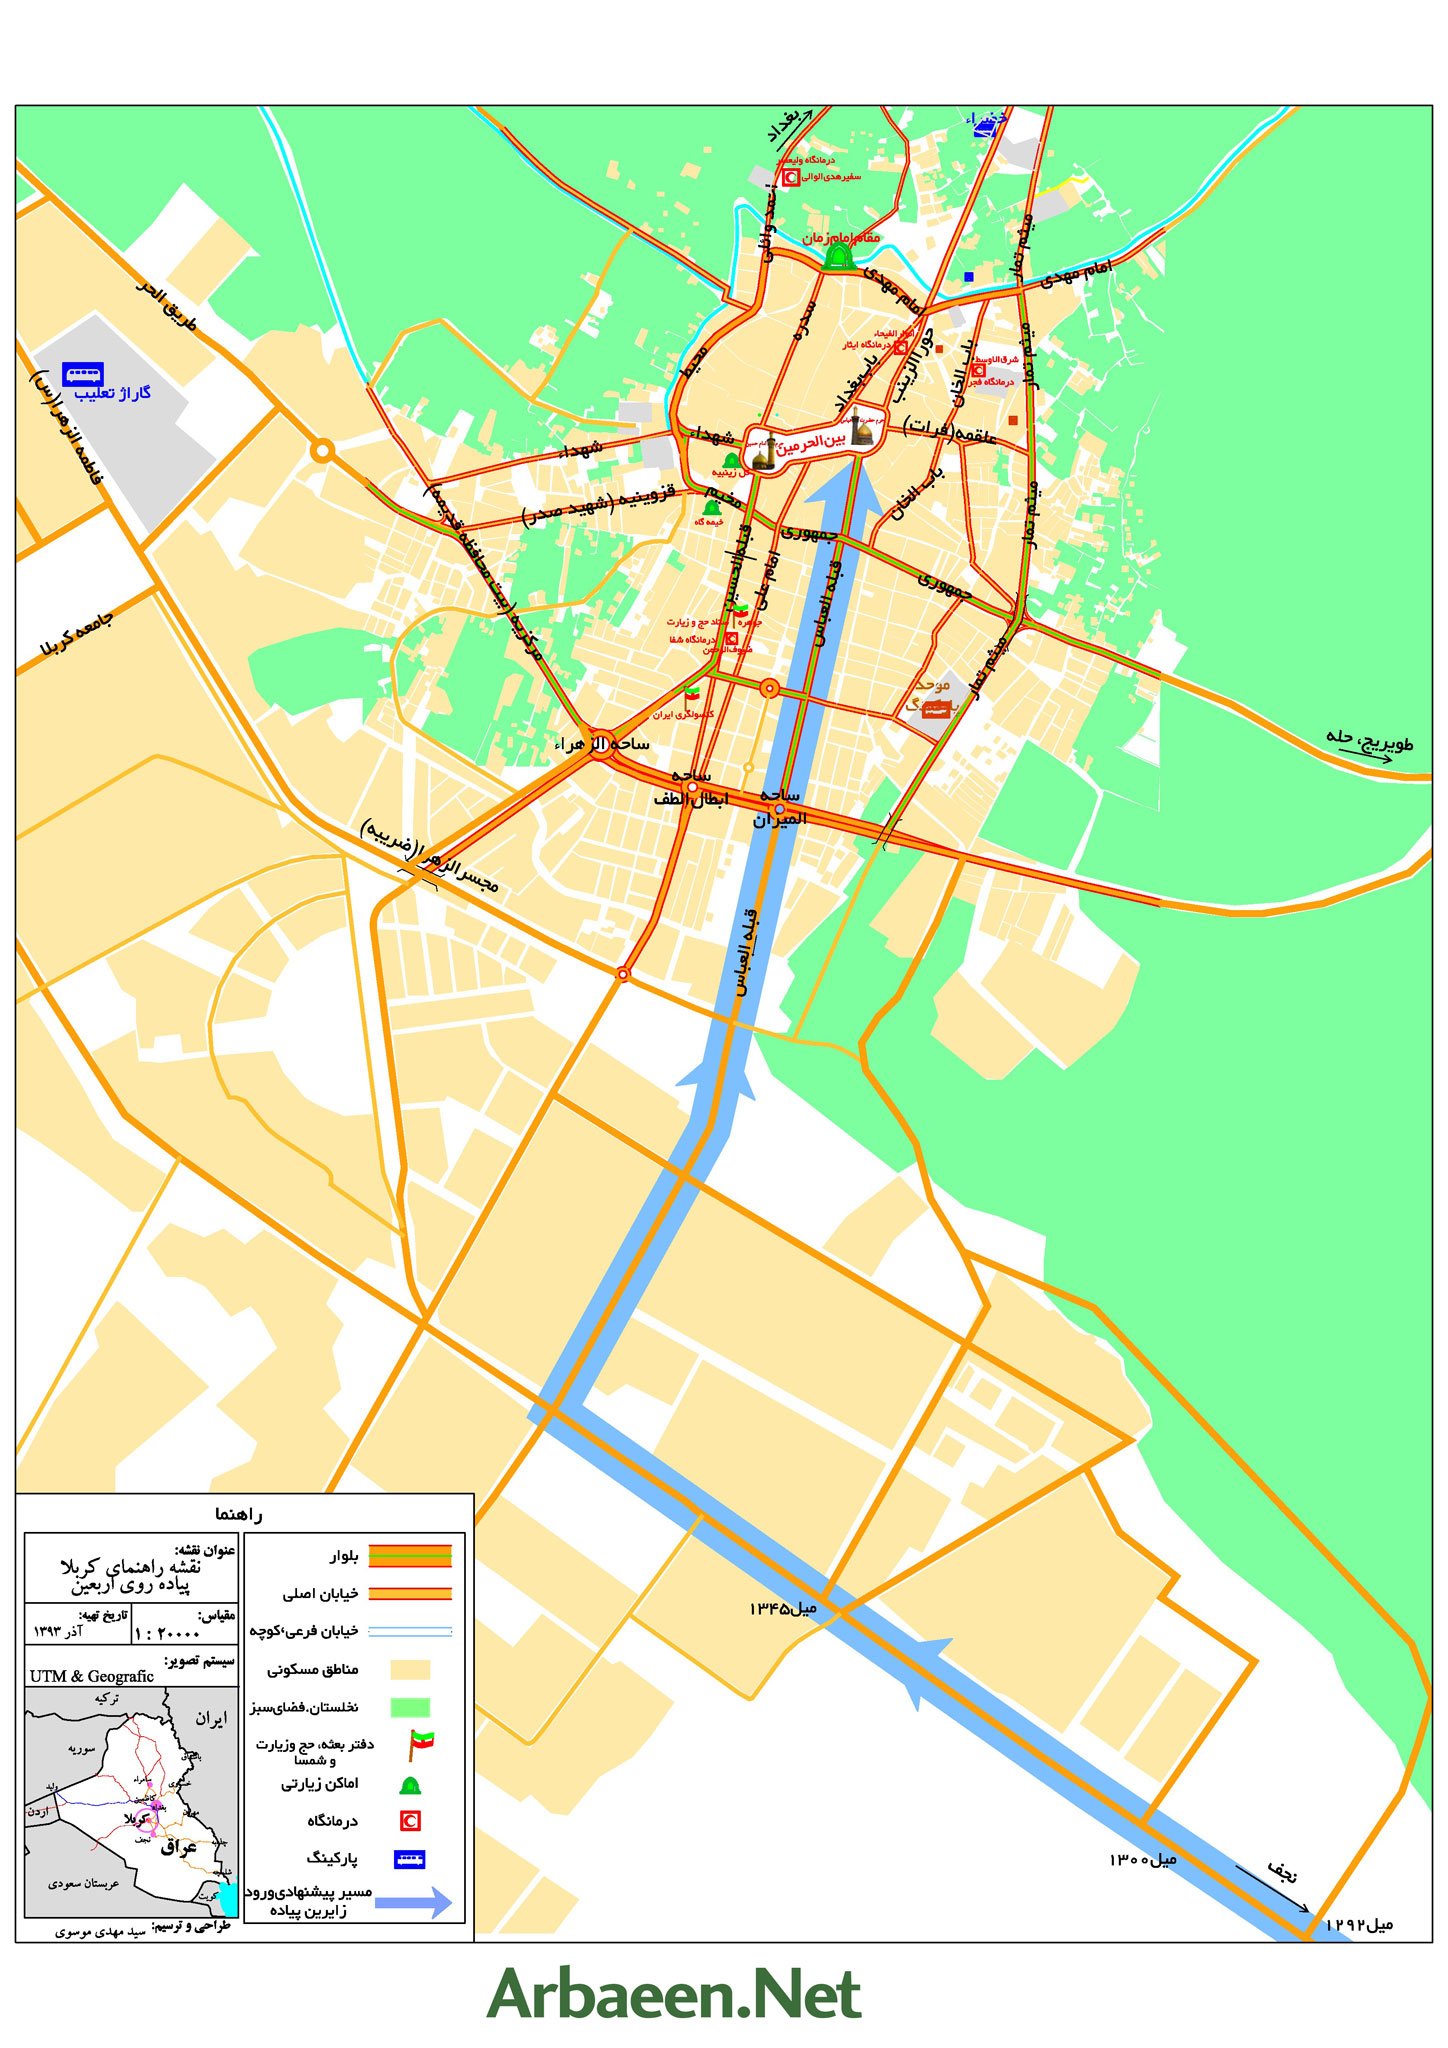 Map4.Arbaeen.Net